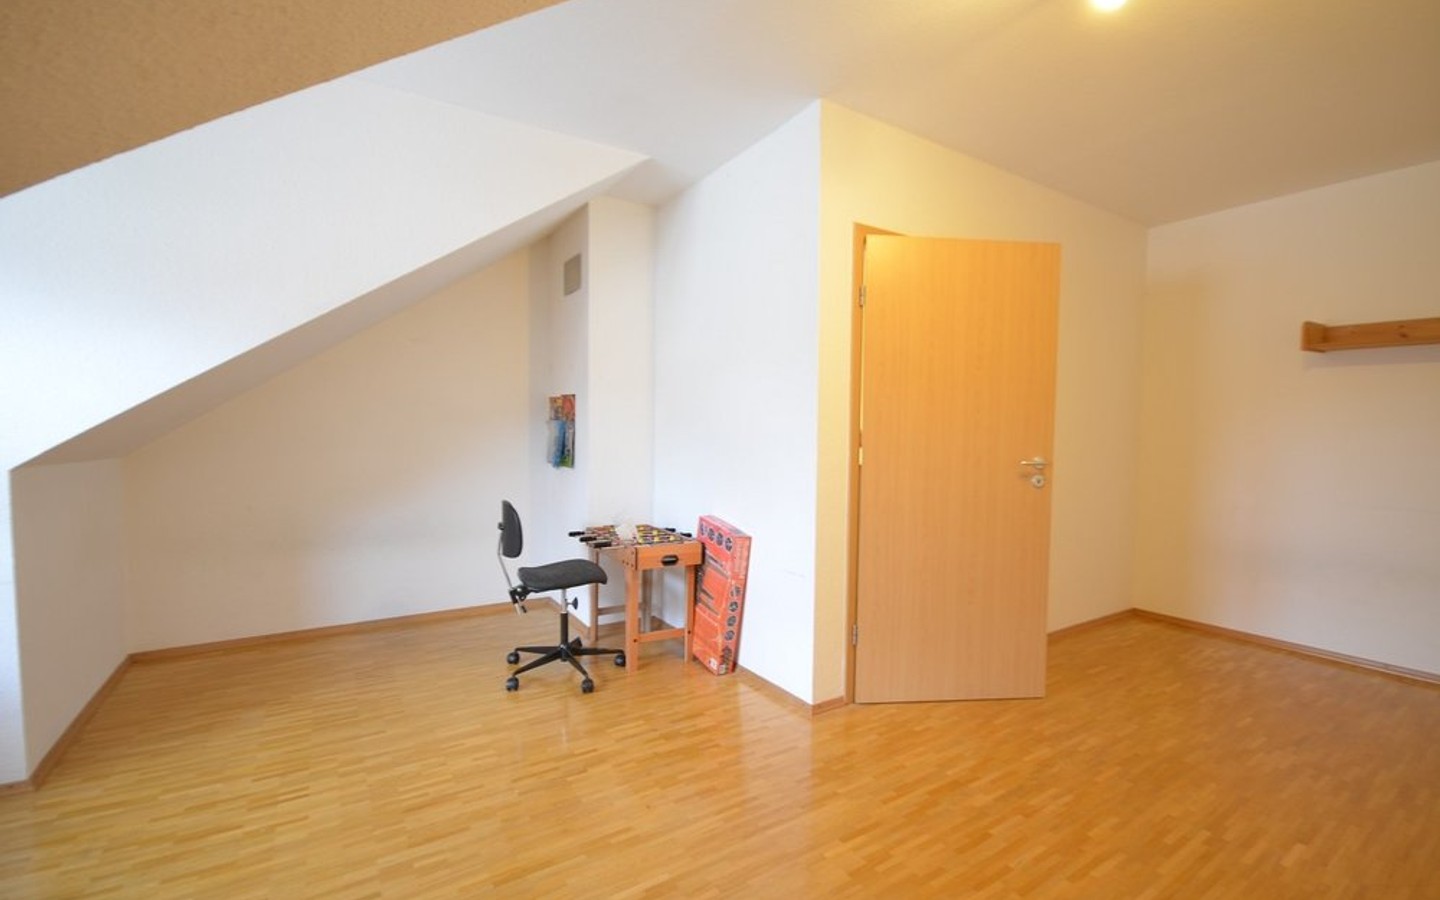 Zimmer DG - Krebs Immobilien: Heidelberg-Wieblingen: Sehr solides Reihenmittelhaus mit zeitgemäßer Ausstattung